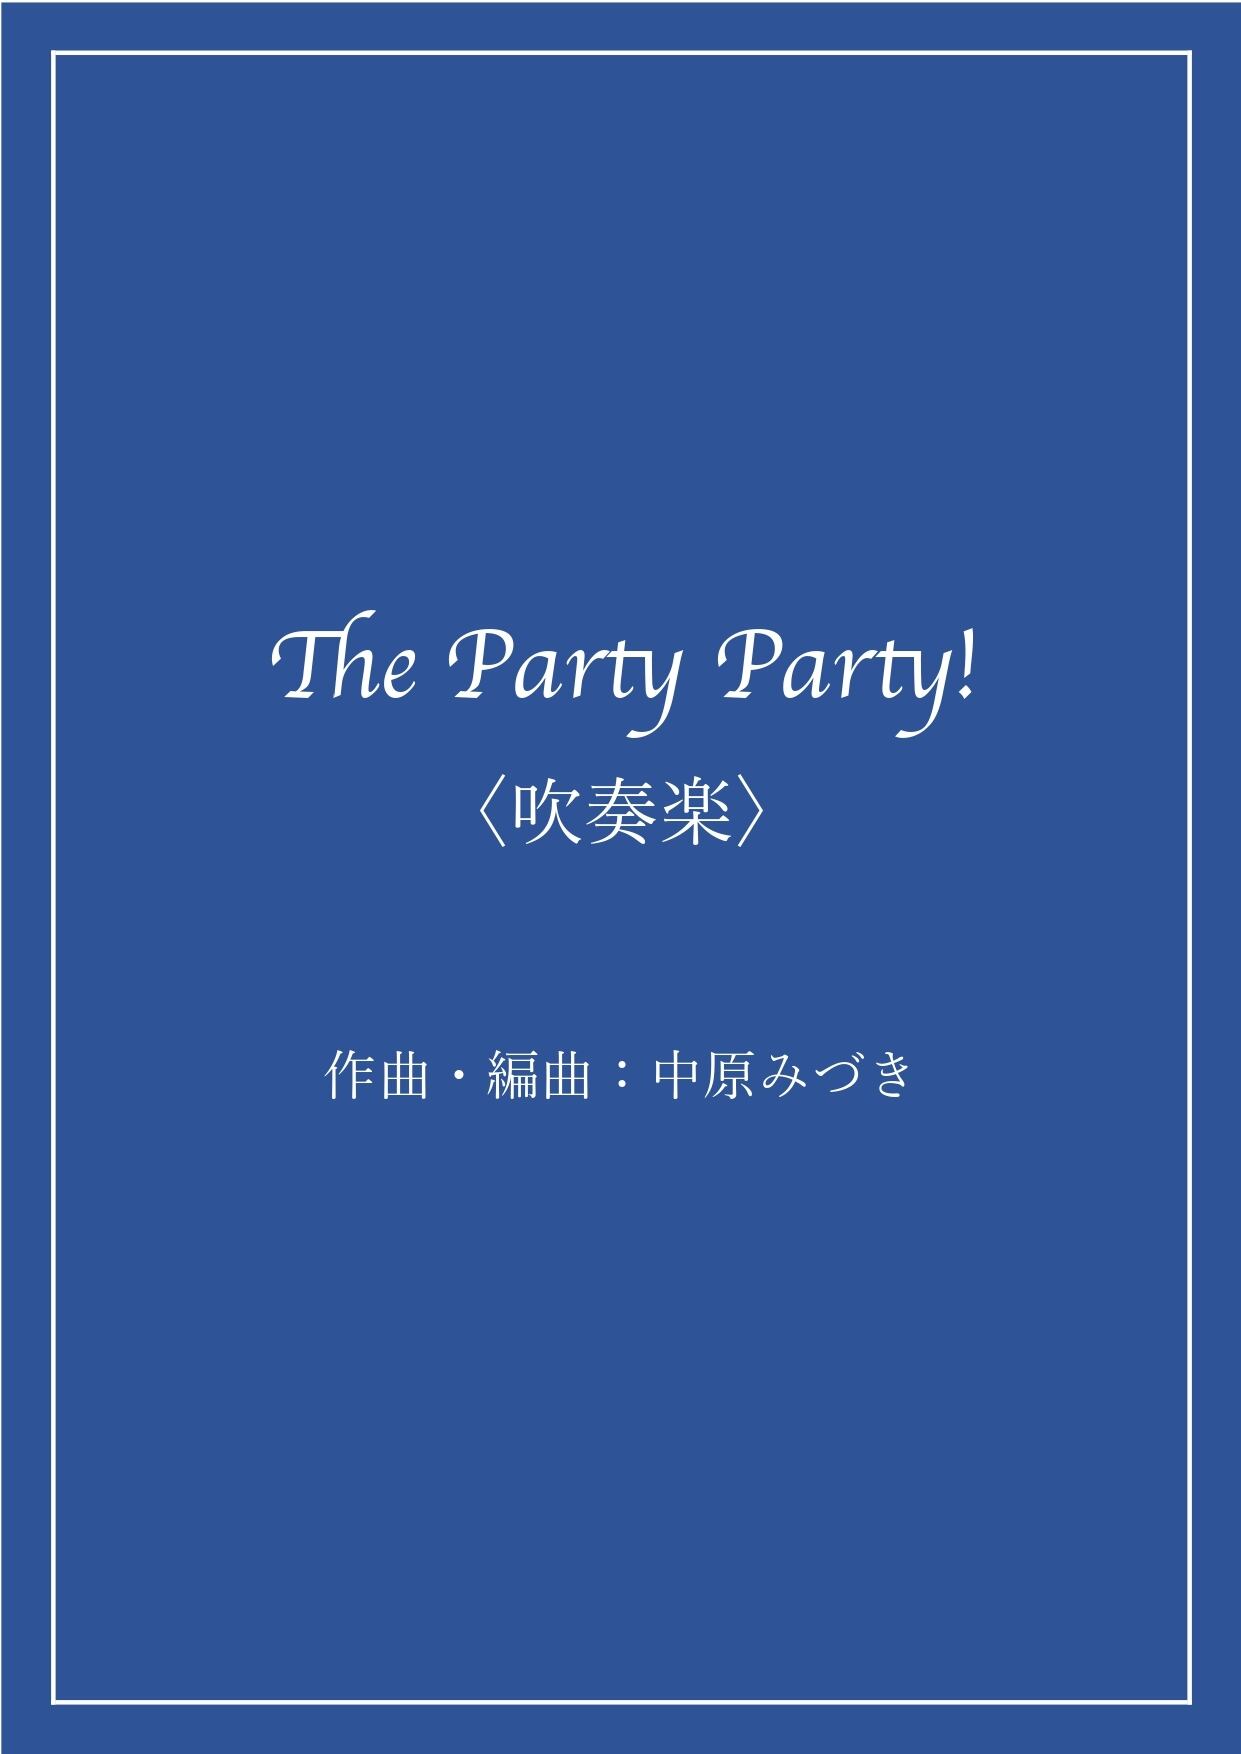 【吹奏楽】"噂の鬼畜曲" The Party Party！【中原みづき作曲】